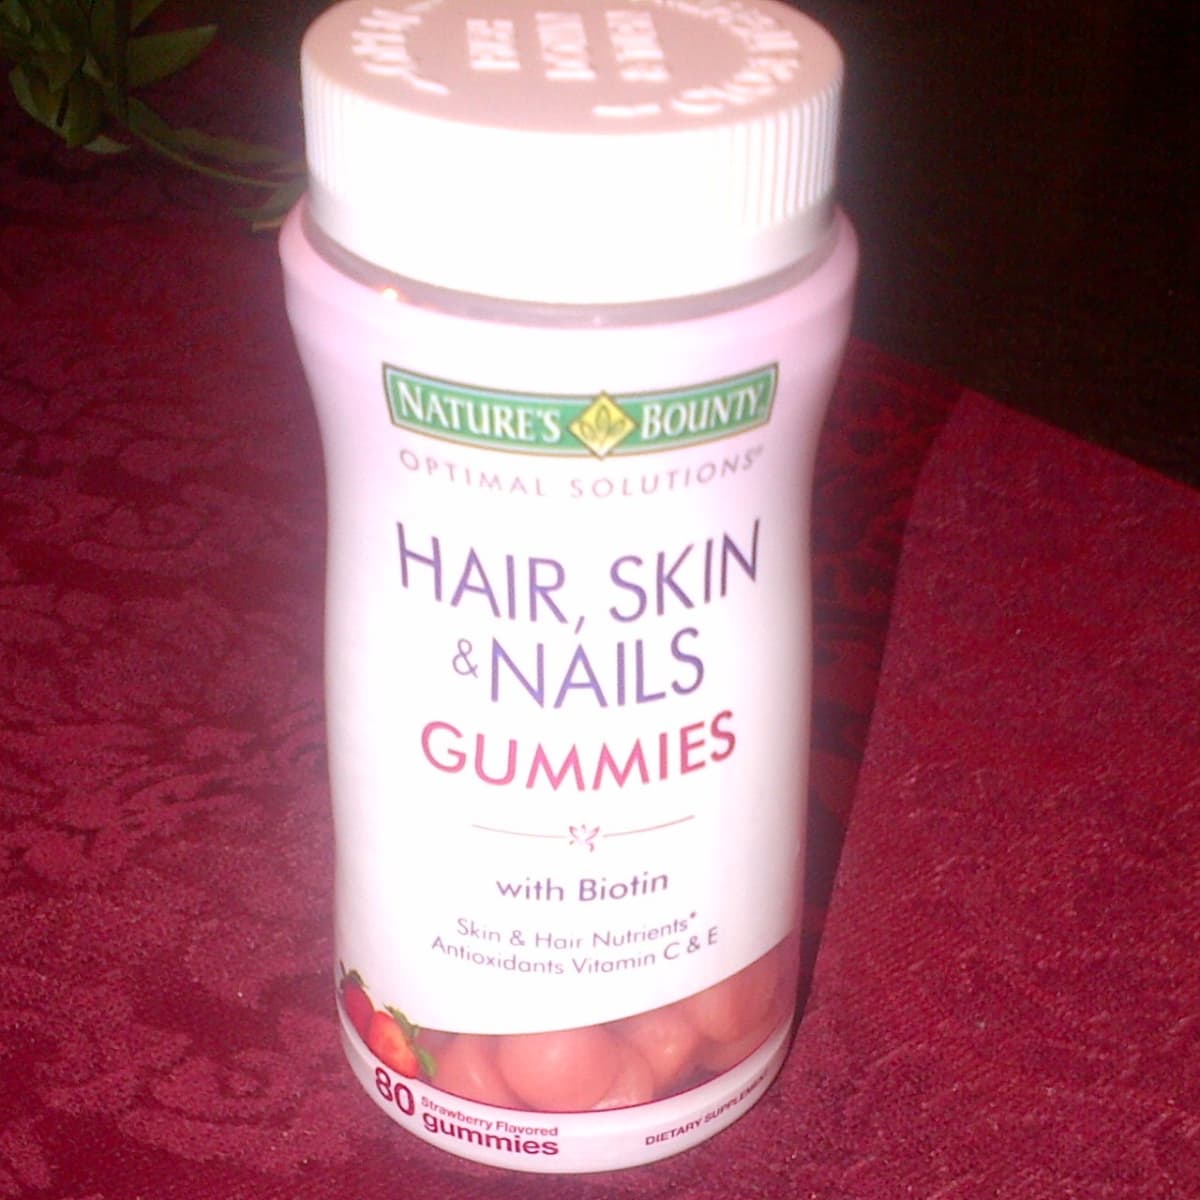 Kẹo dẻo Hair, Skin and Nails Gummies giúp da mịn màng, tóc óng mượt, răng  chắc khỏe - Thanhhuongshop.com